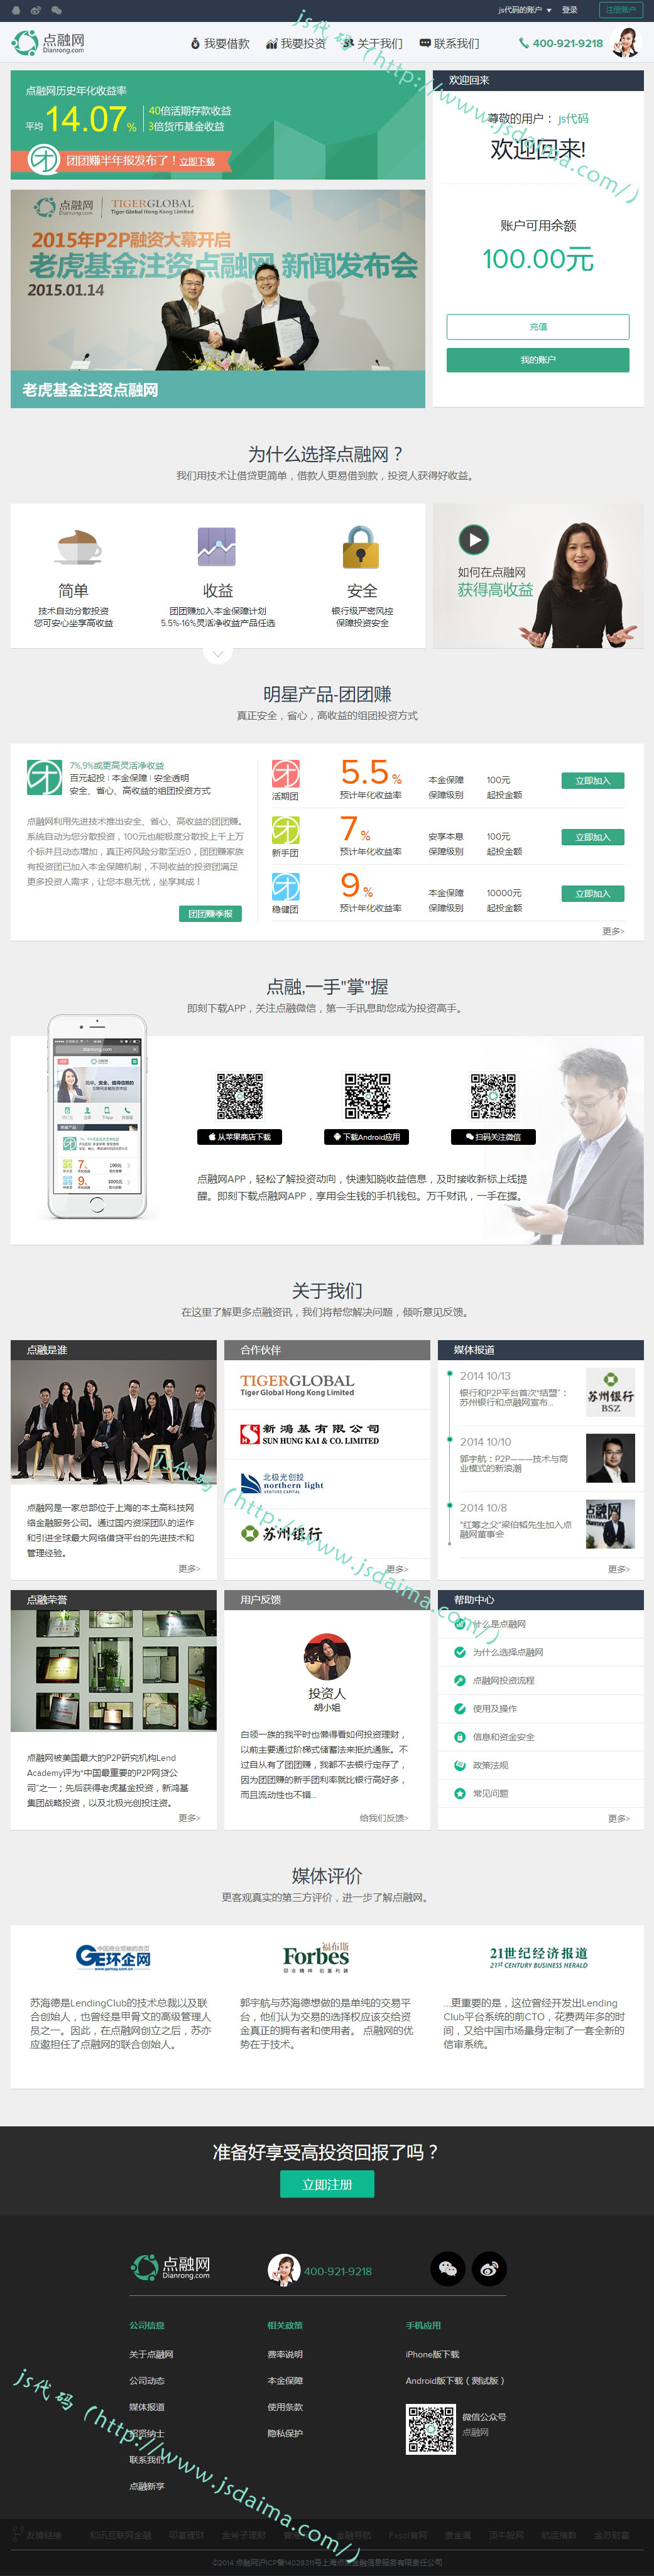 绿色简洁清爽P2P网贷金融投资理财网站模板下载